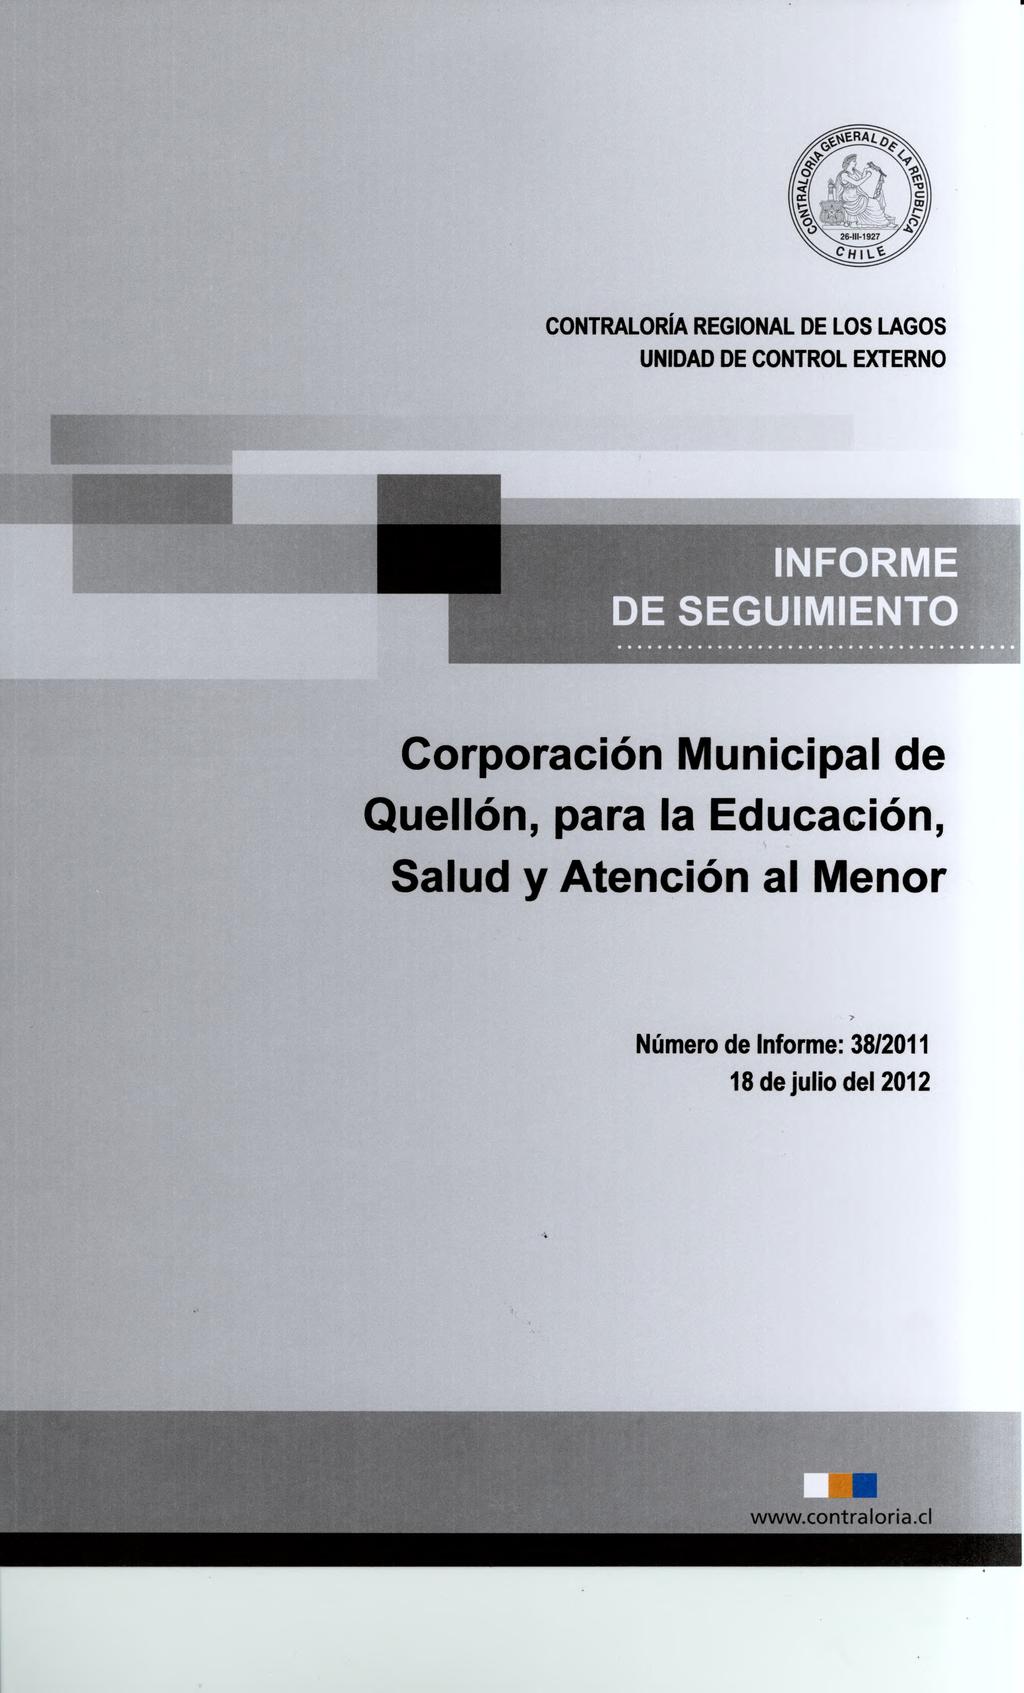 Corporación Municipal de Quellón, para la Educación, Salud y Atención al